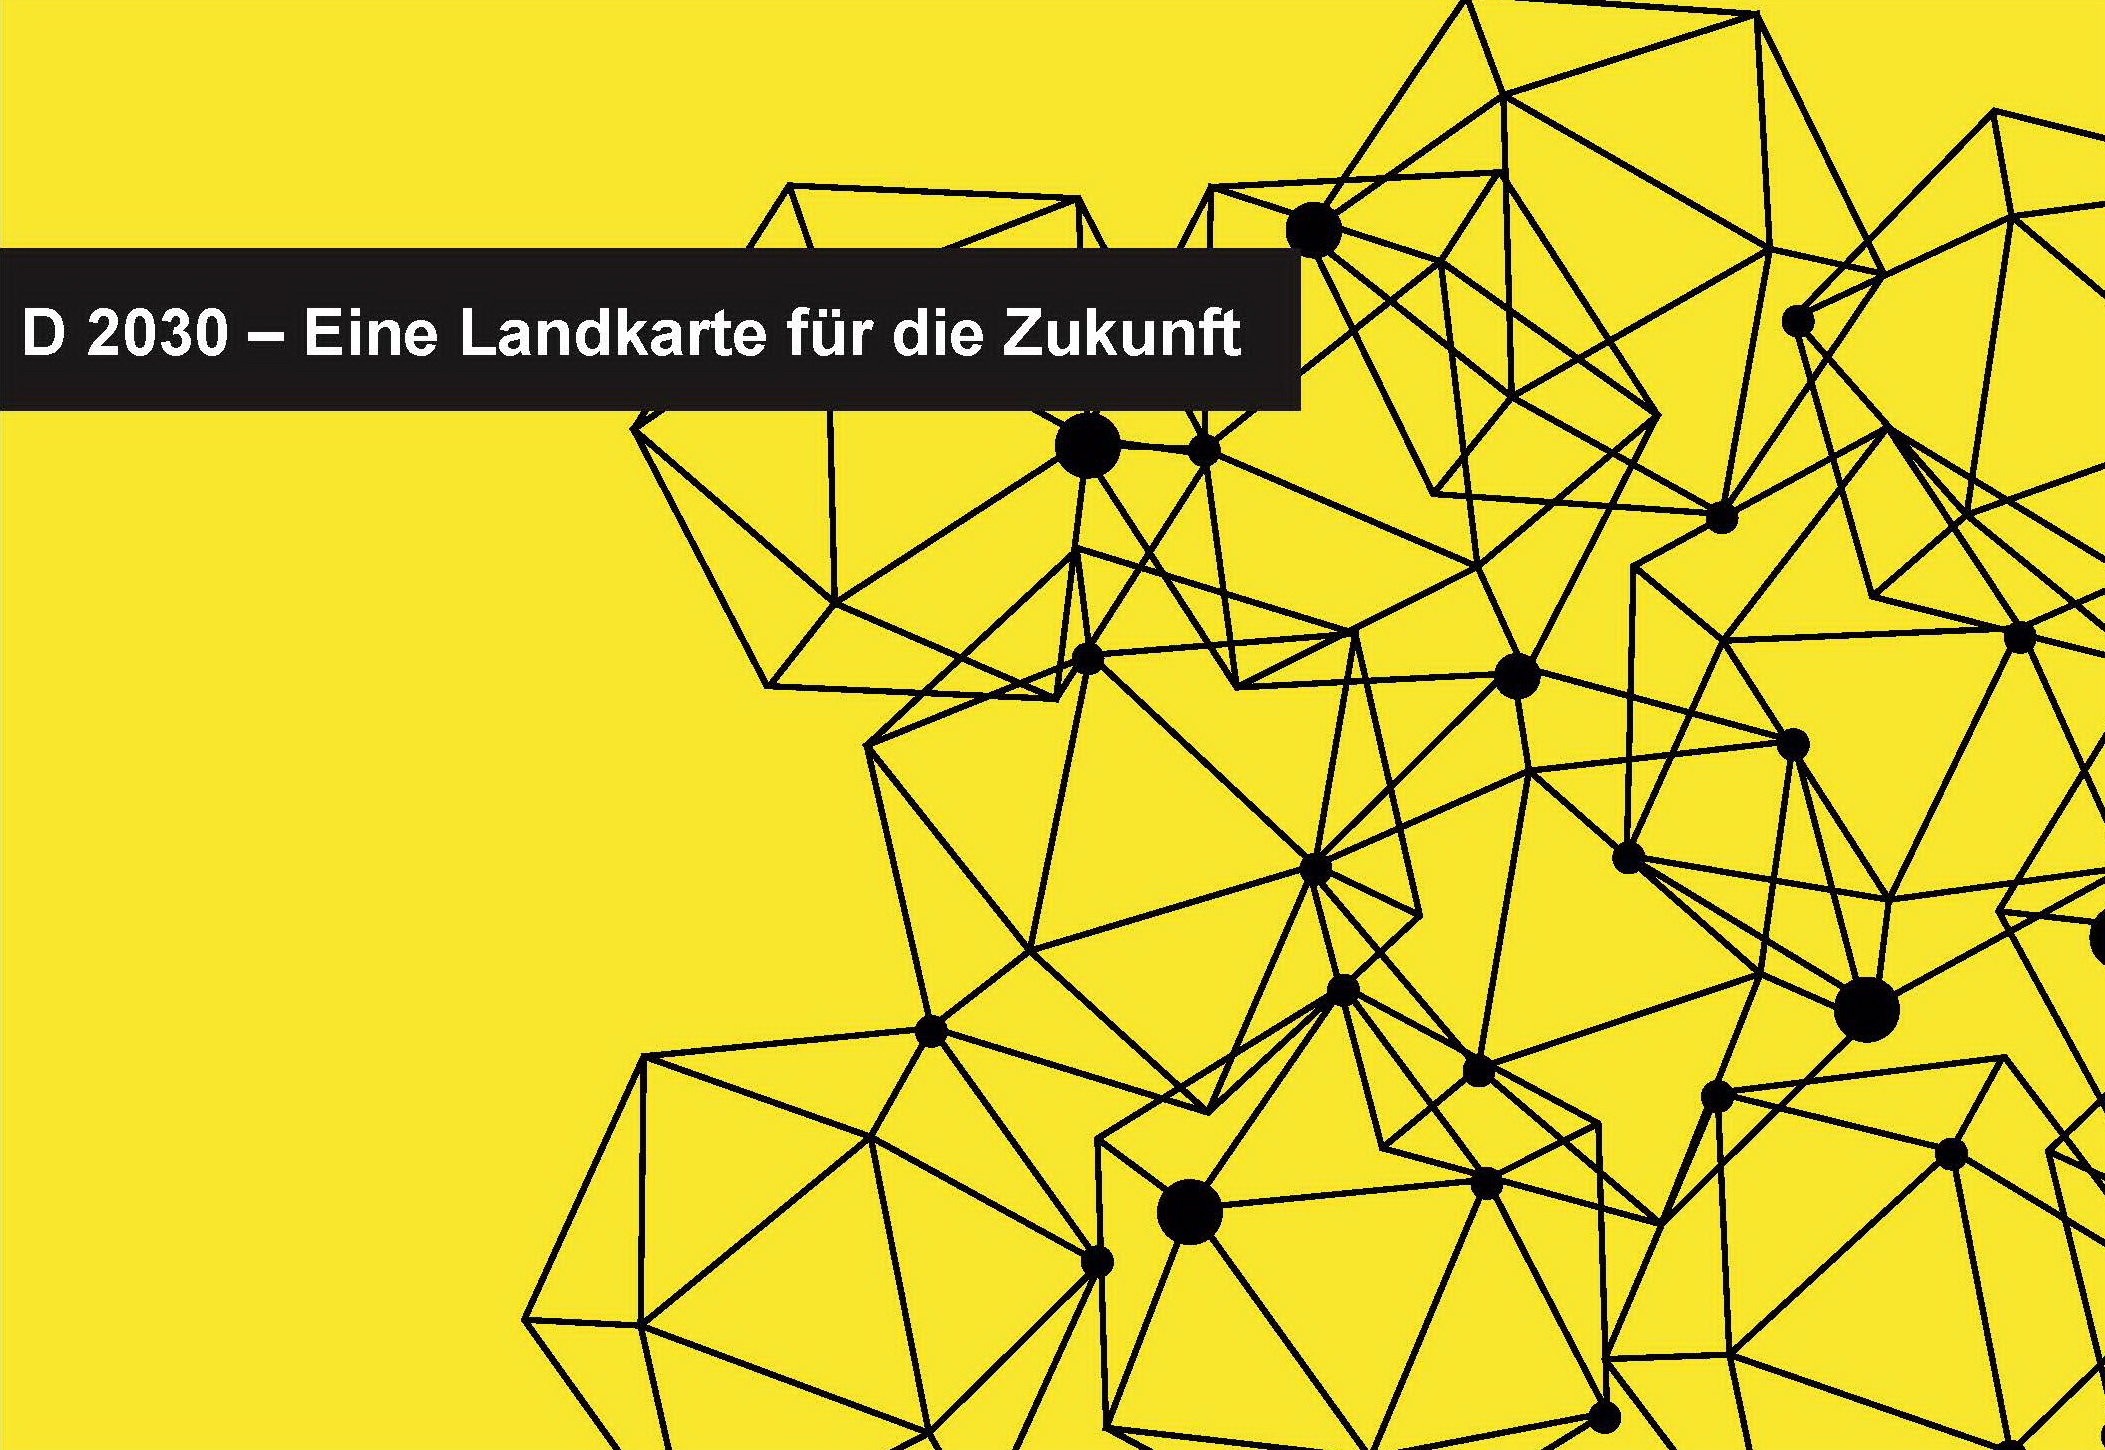 Aufruf für einen Online-Dialog zur Zukunft Deutschlands 2030